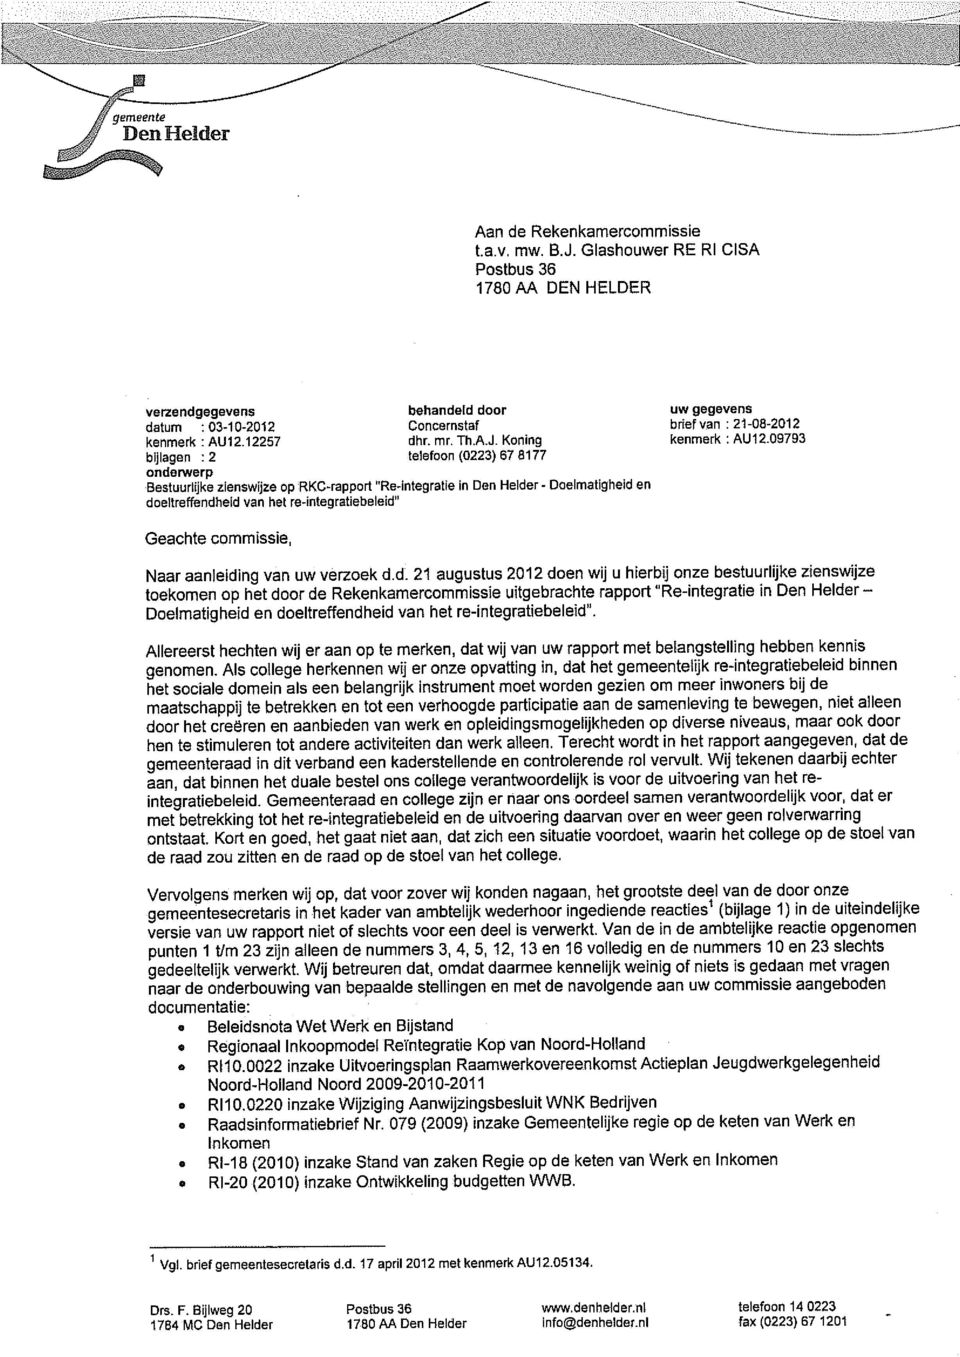 Koning telefoon (0223) 67 8177 onderwerp Bestuurlijke zienswijze op RKC~rapport "Re integratie in Den Helder - Doelmatigheid en doeltreffendheid van het re-integratiebeleid" uw gegevens brief van: